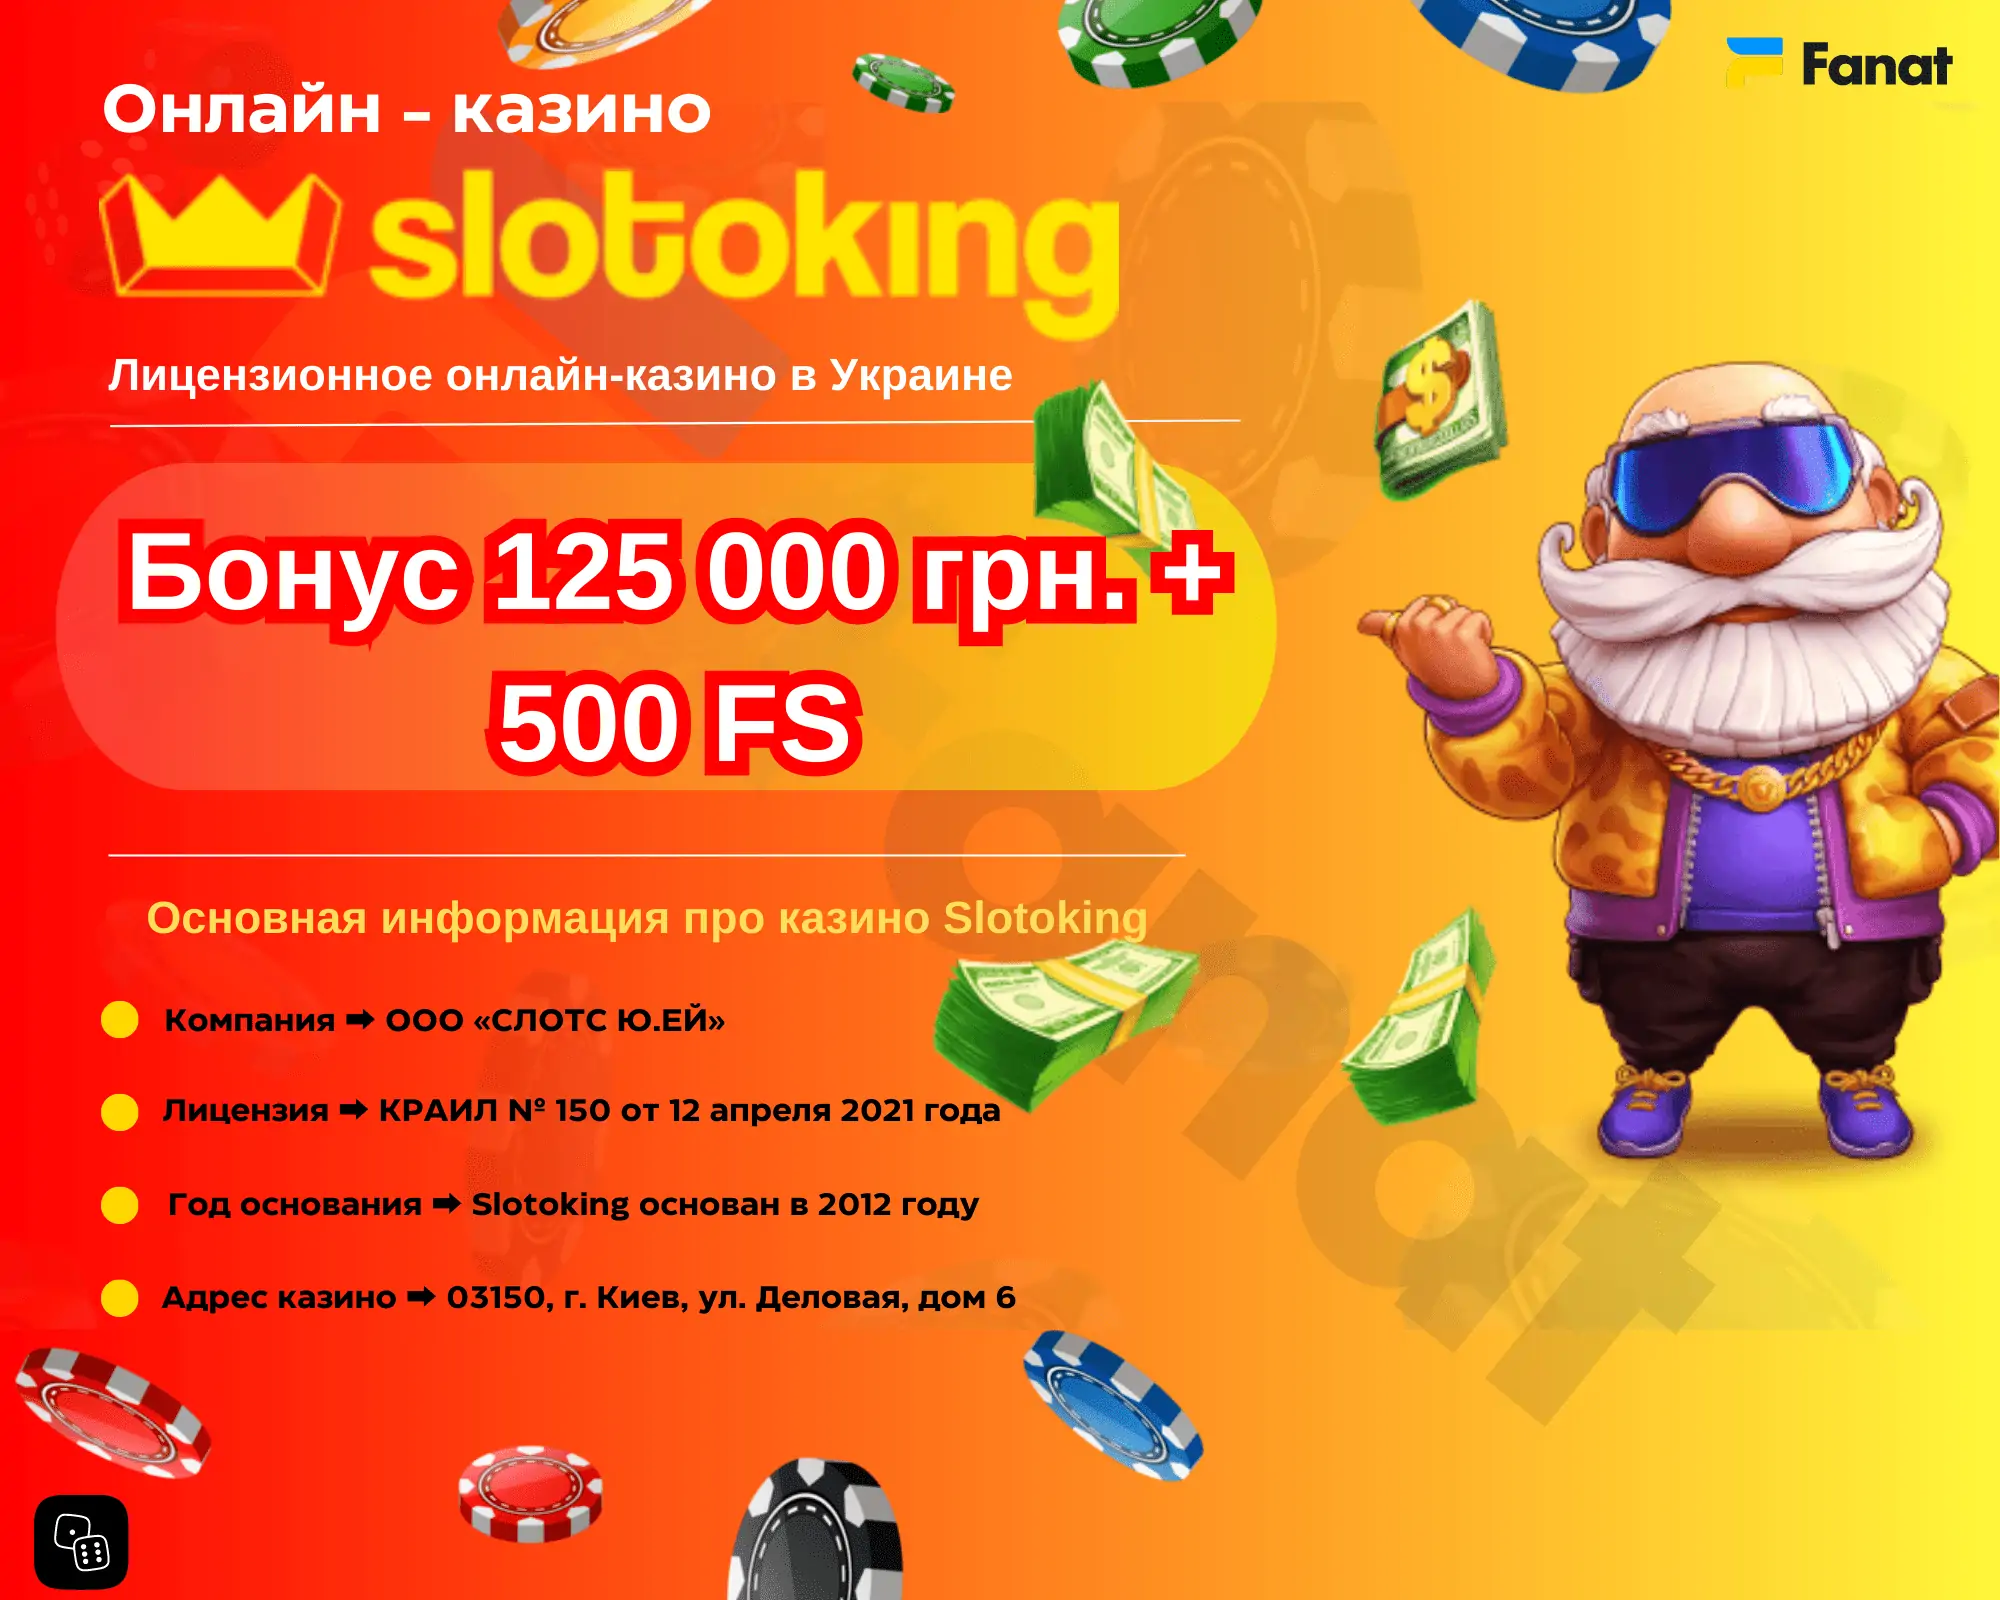 Слотокинг казино онлайн - игровые автоматы, обзор, регистрация, вход